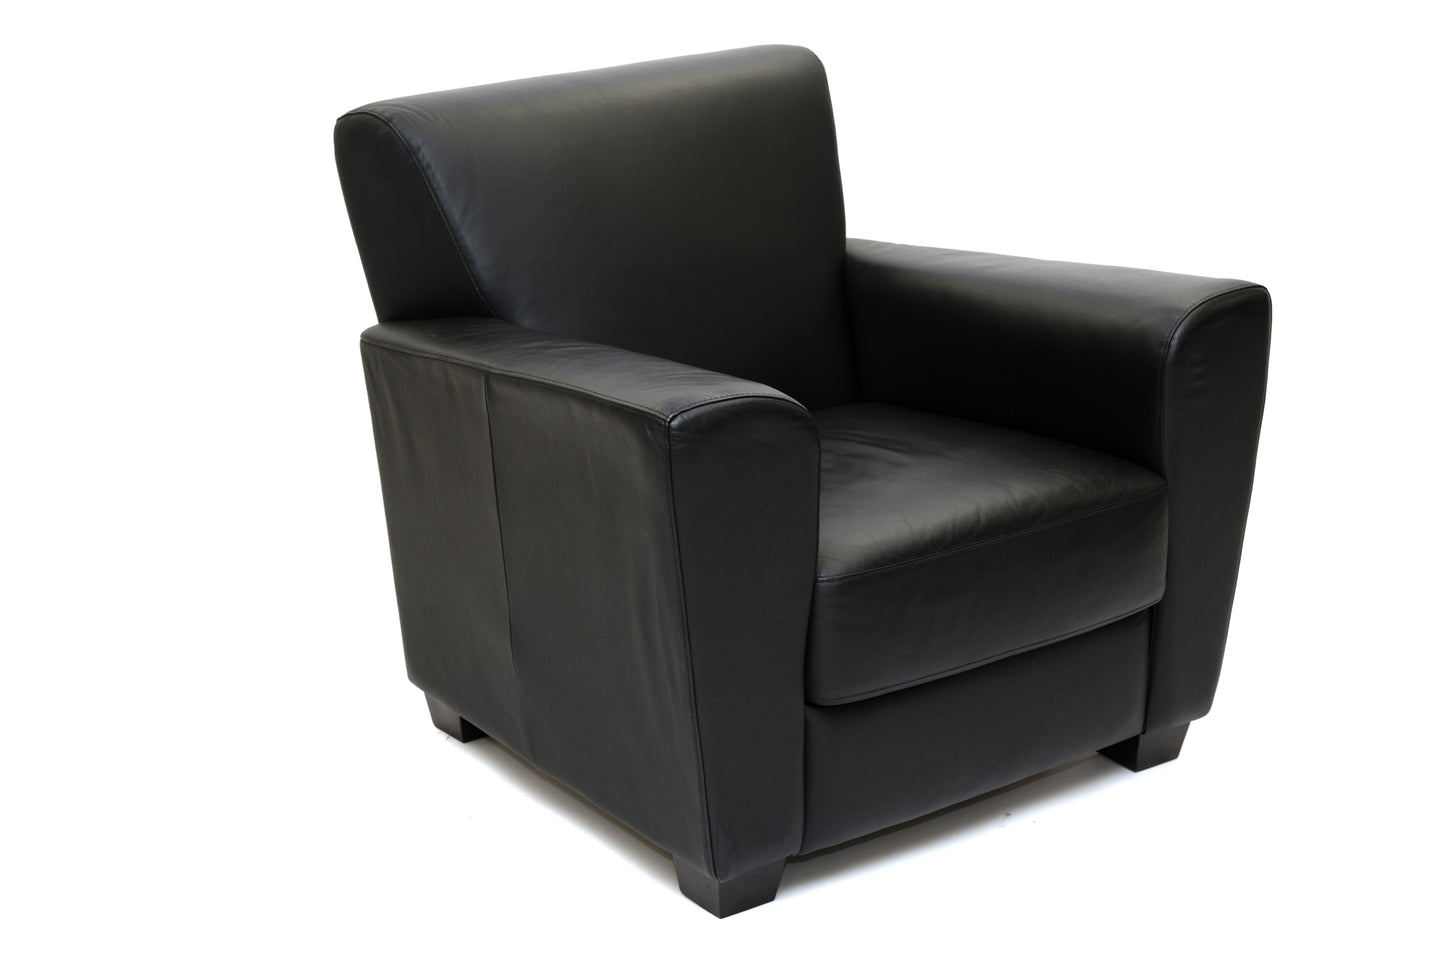 36"W Black Leather Track Arm Club Chair